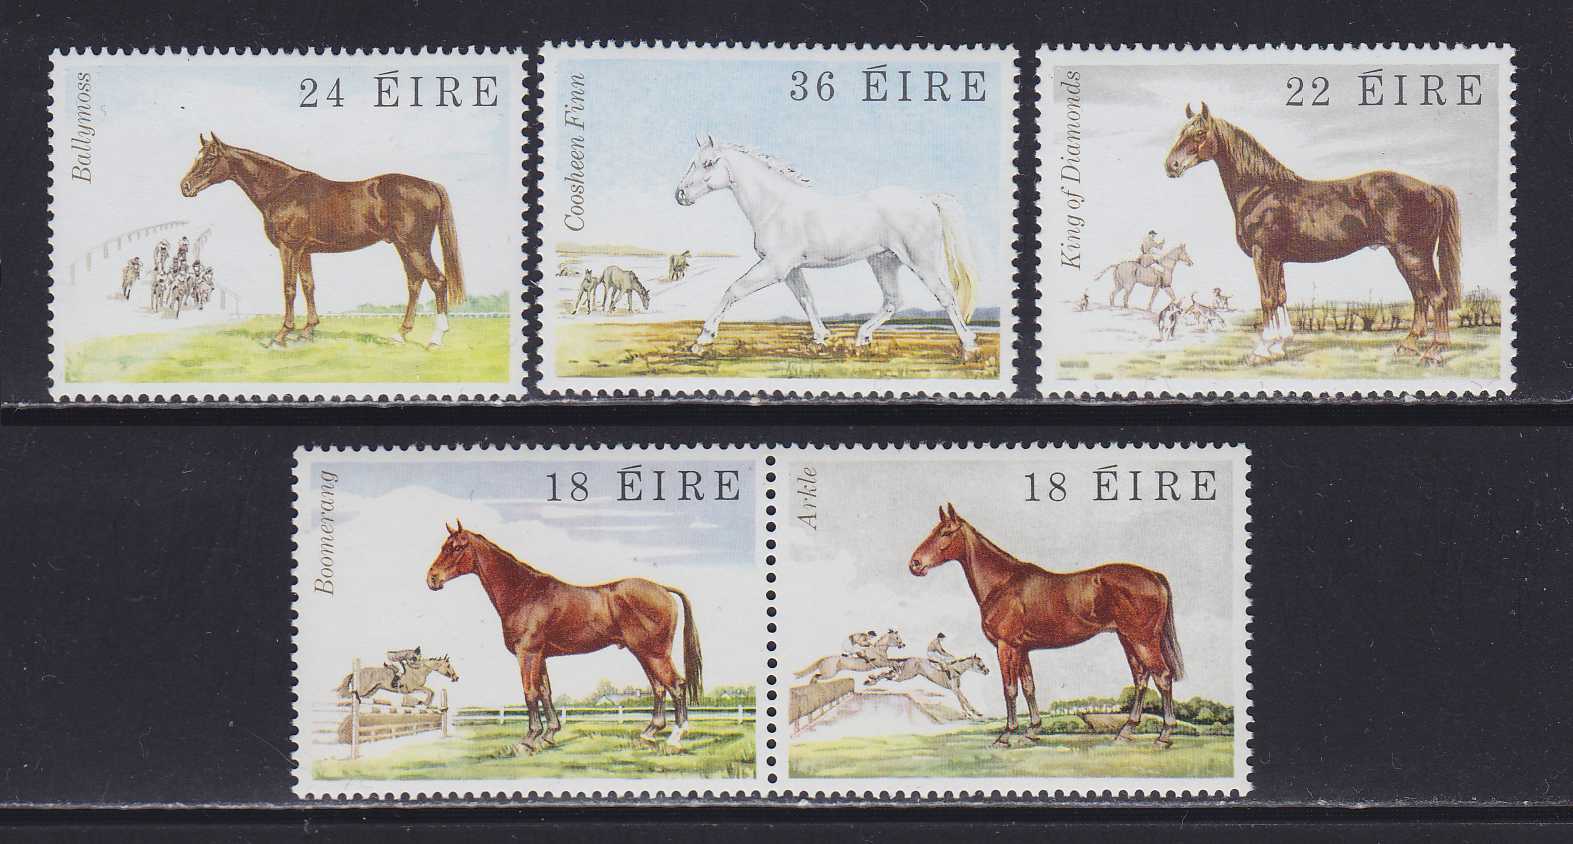 Лошадка марка. Лошади на почтовых марках. Марка машины с лошадью. Человек и лошадь на марках.